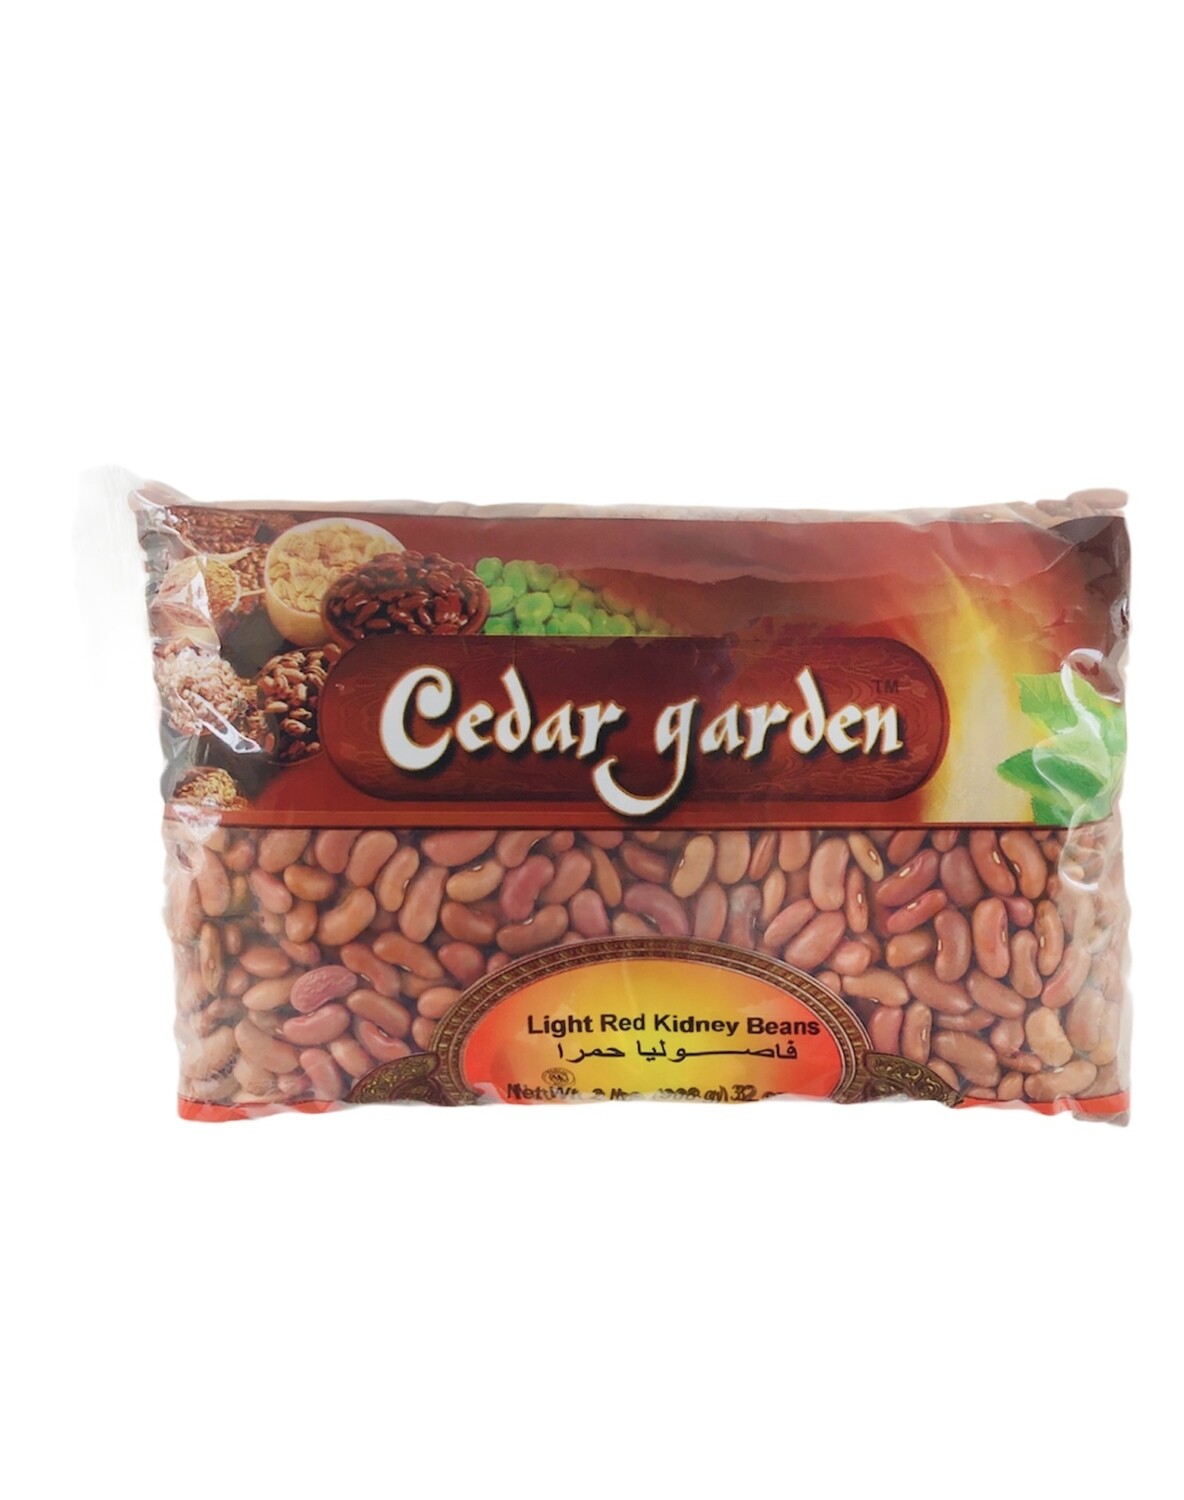 Cedar Garden Light Red Kidney Beans 12x2lb